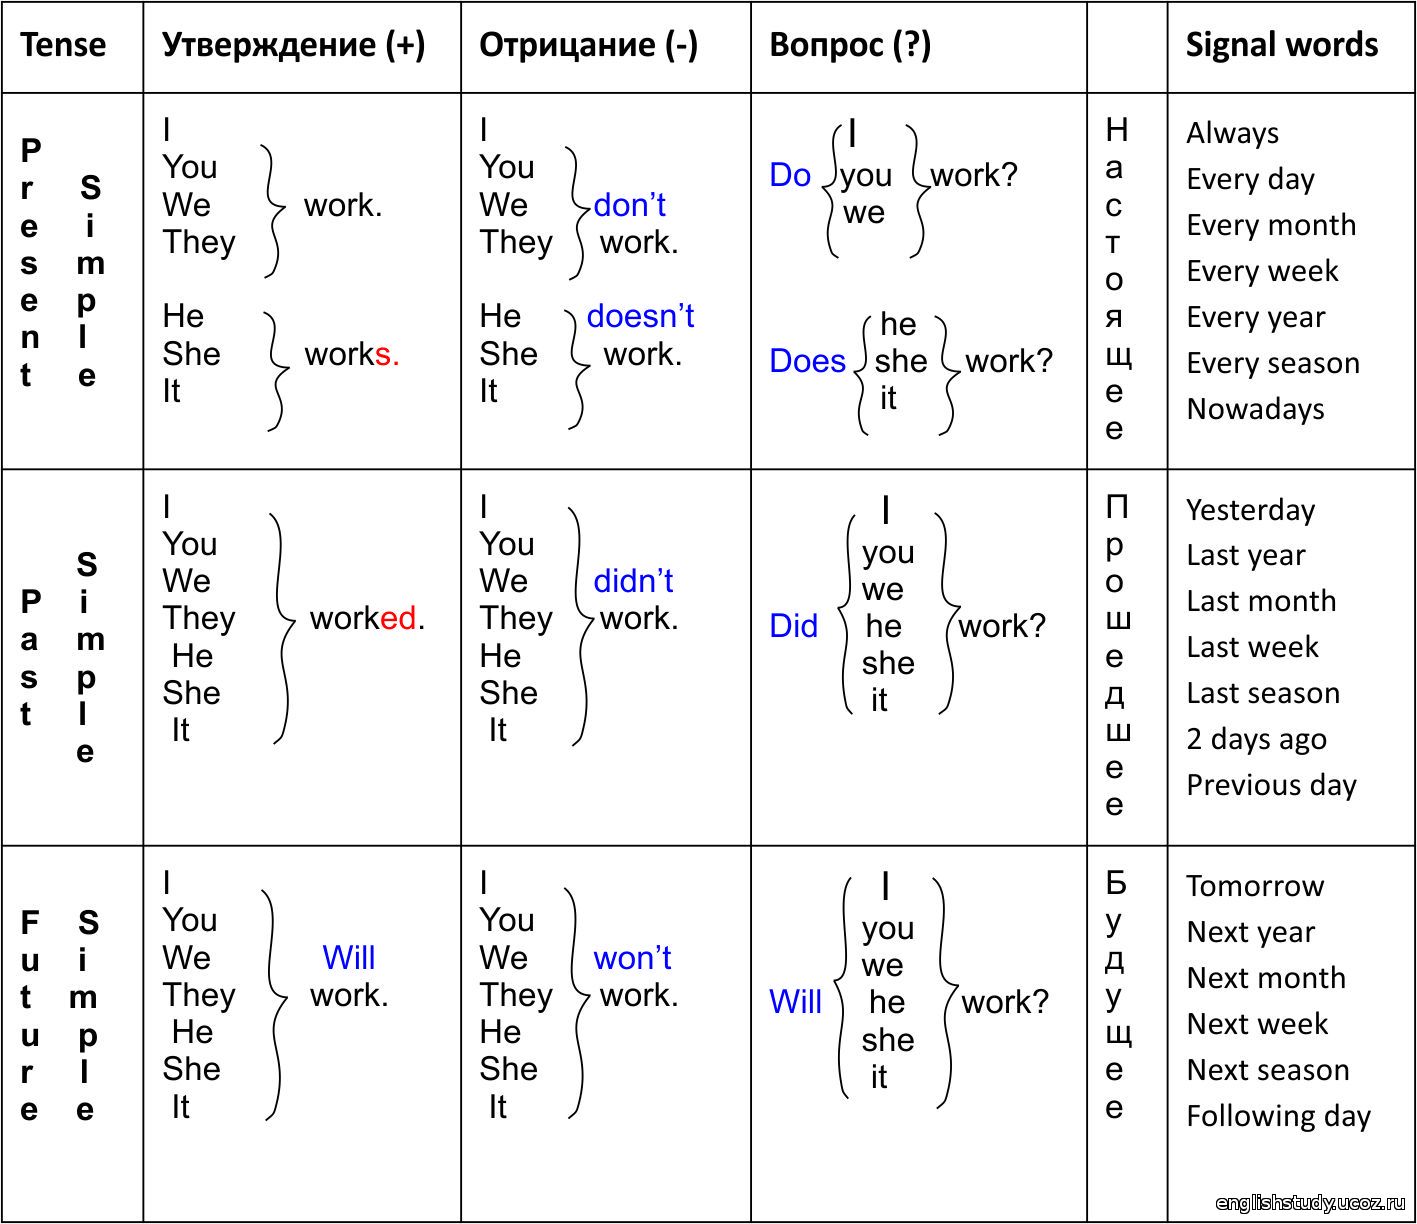 Класс времени c. Времена глагола в английском языке таблица с примерами. Времена в английском языке таблица с переводом. Построение времен в английском языке таблица. Схема времен в английском языке таблица с примерами.